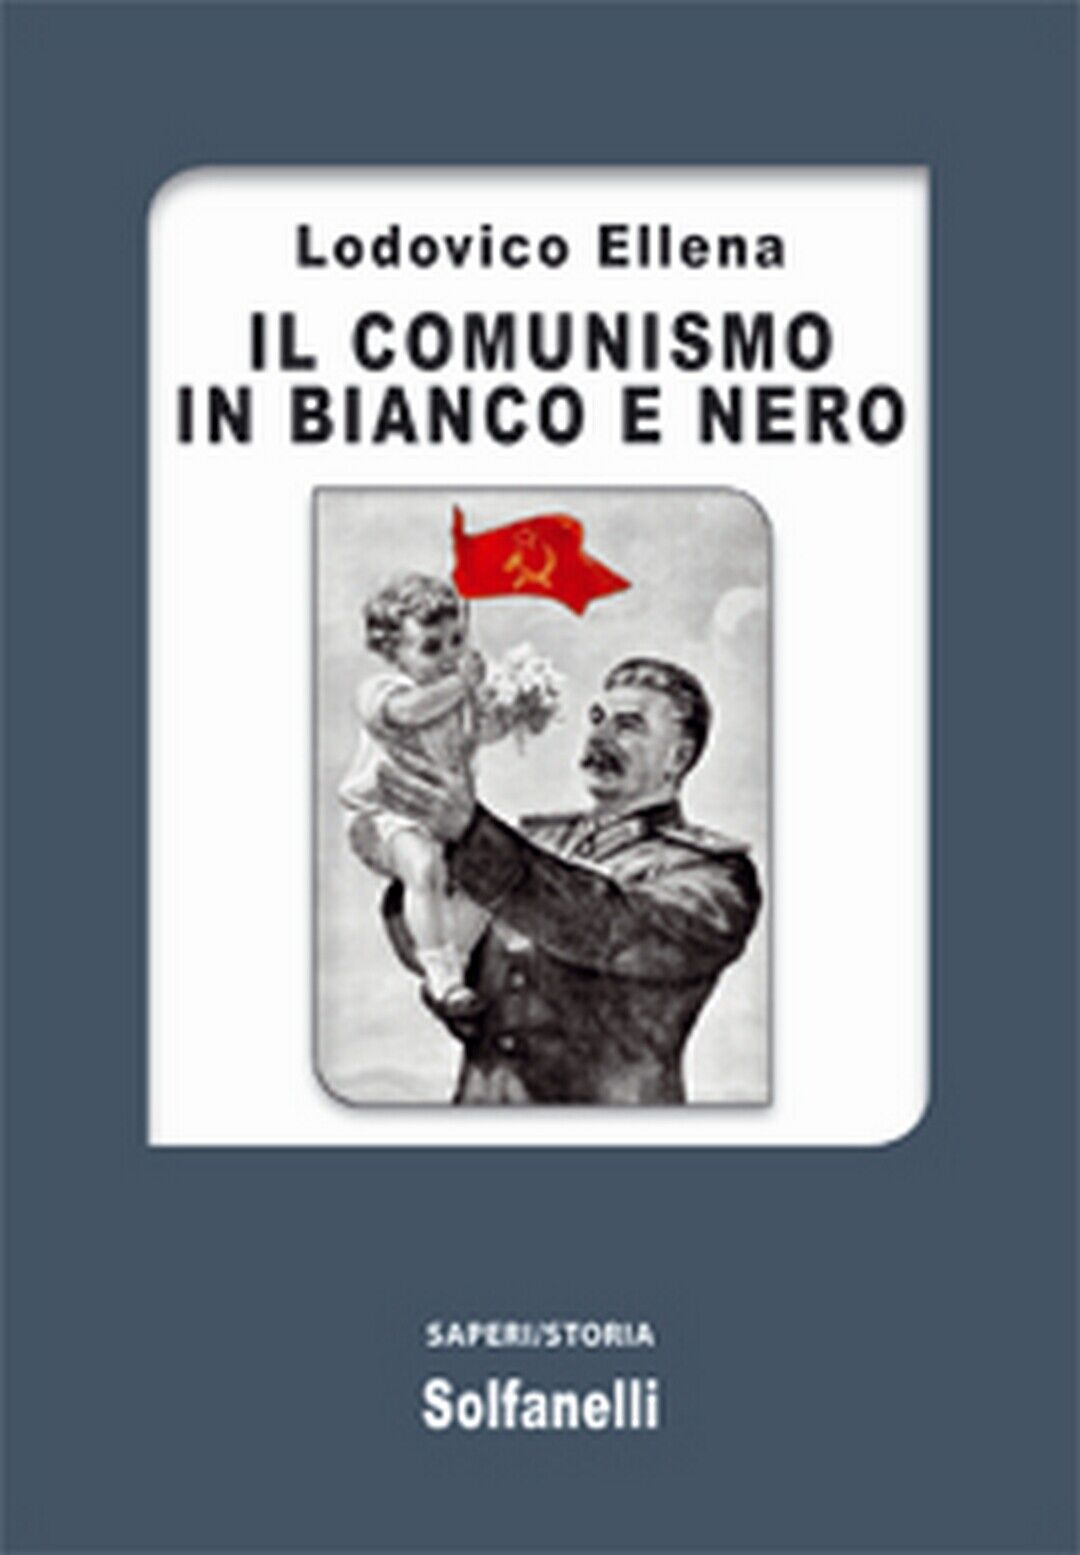 IL COMUNISMO IN BIANCO E NERO  di Lodovico Ellena,  Solfanelli Edizioni